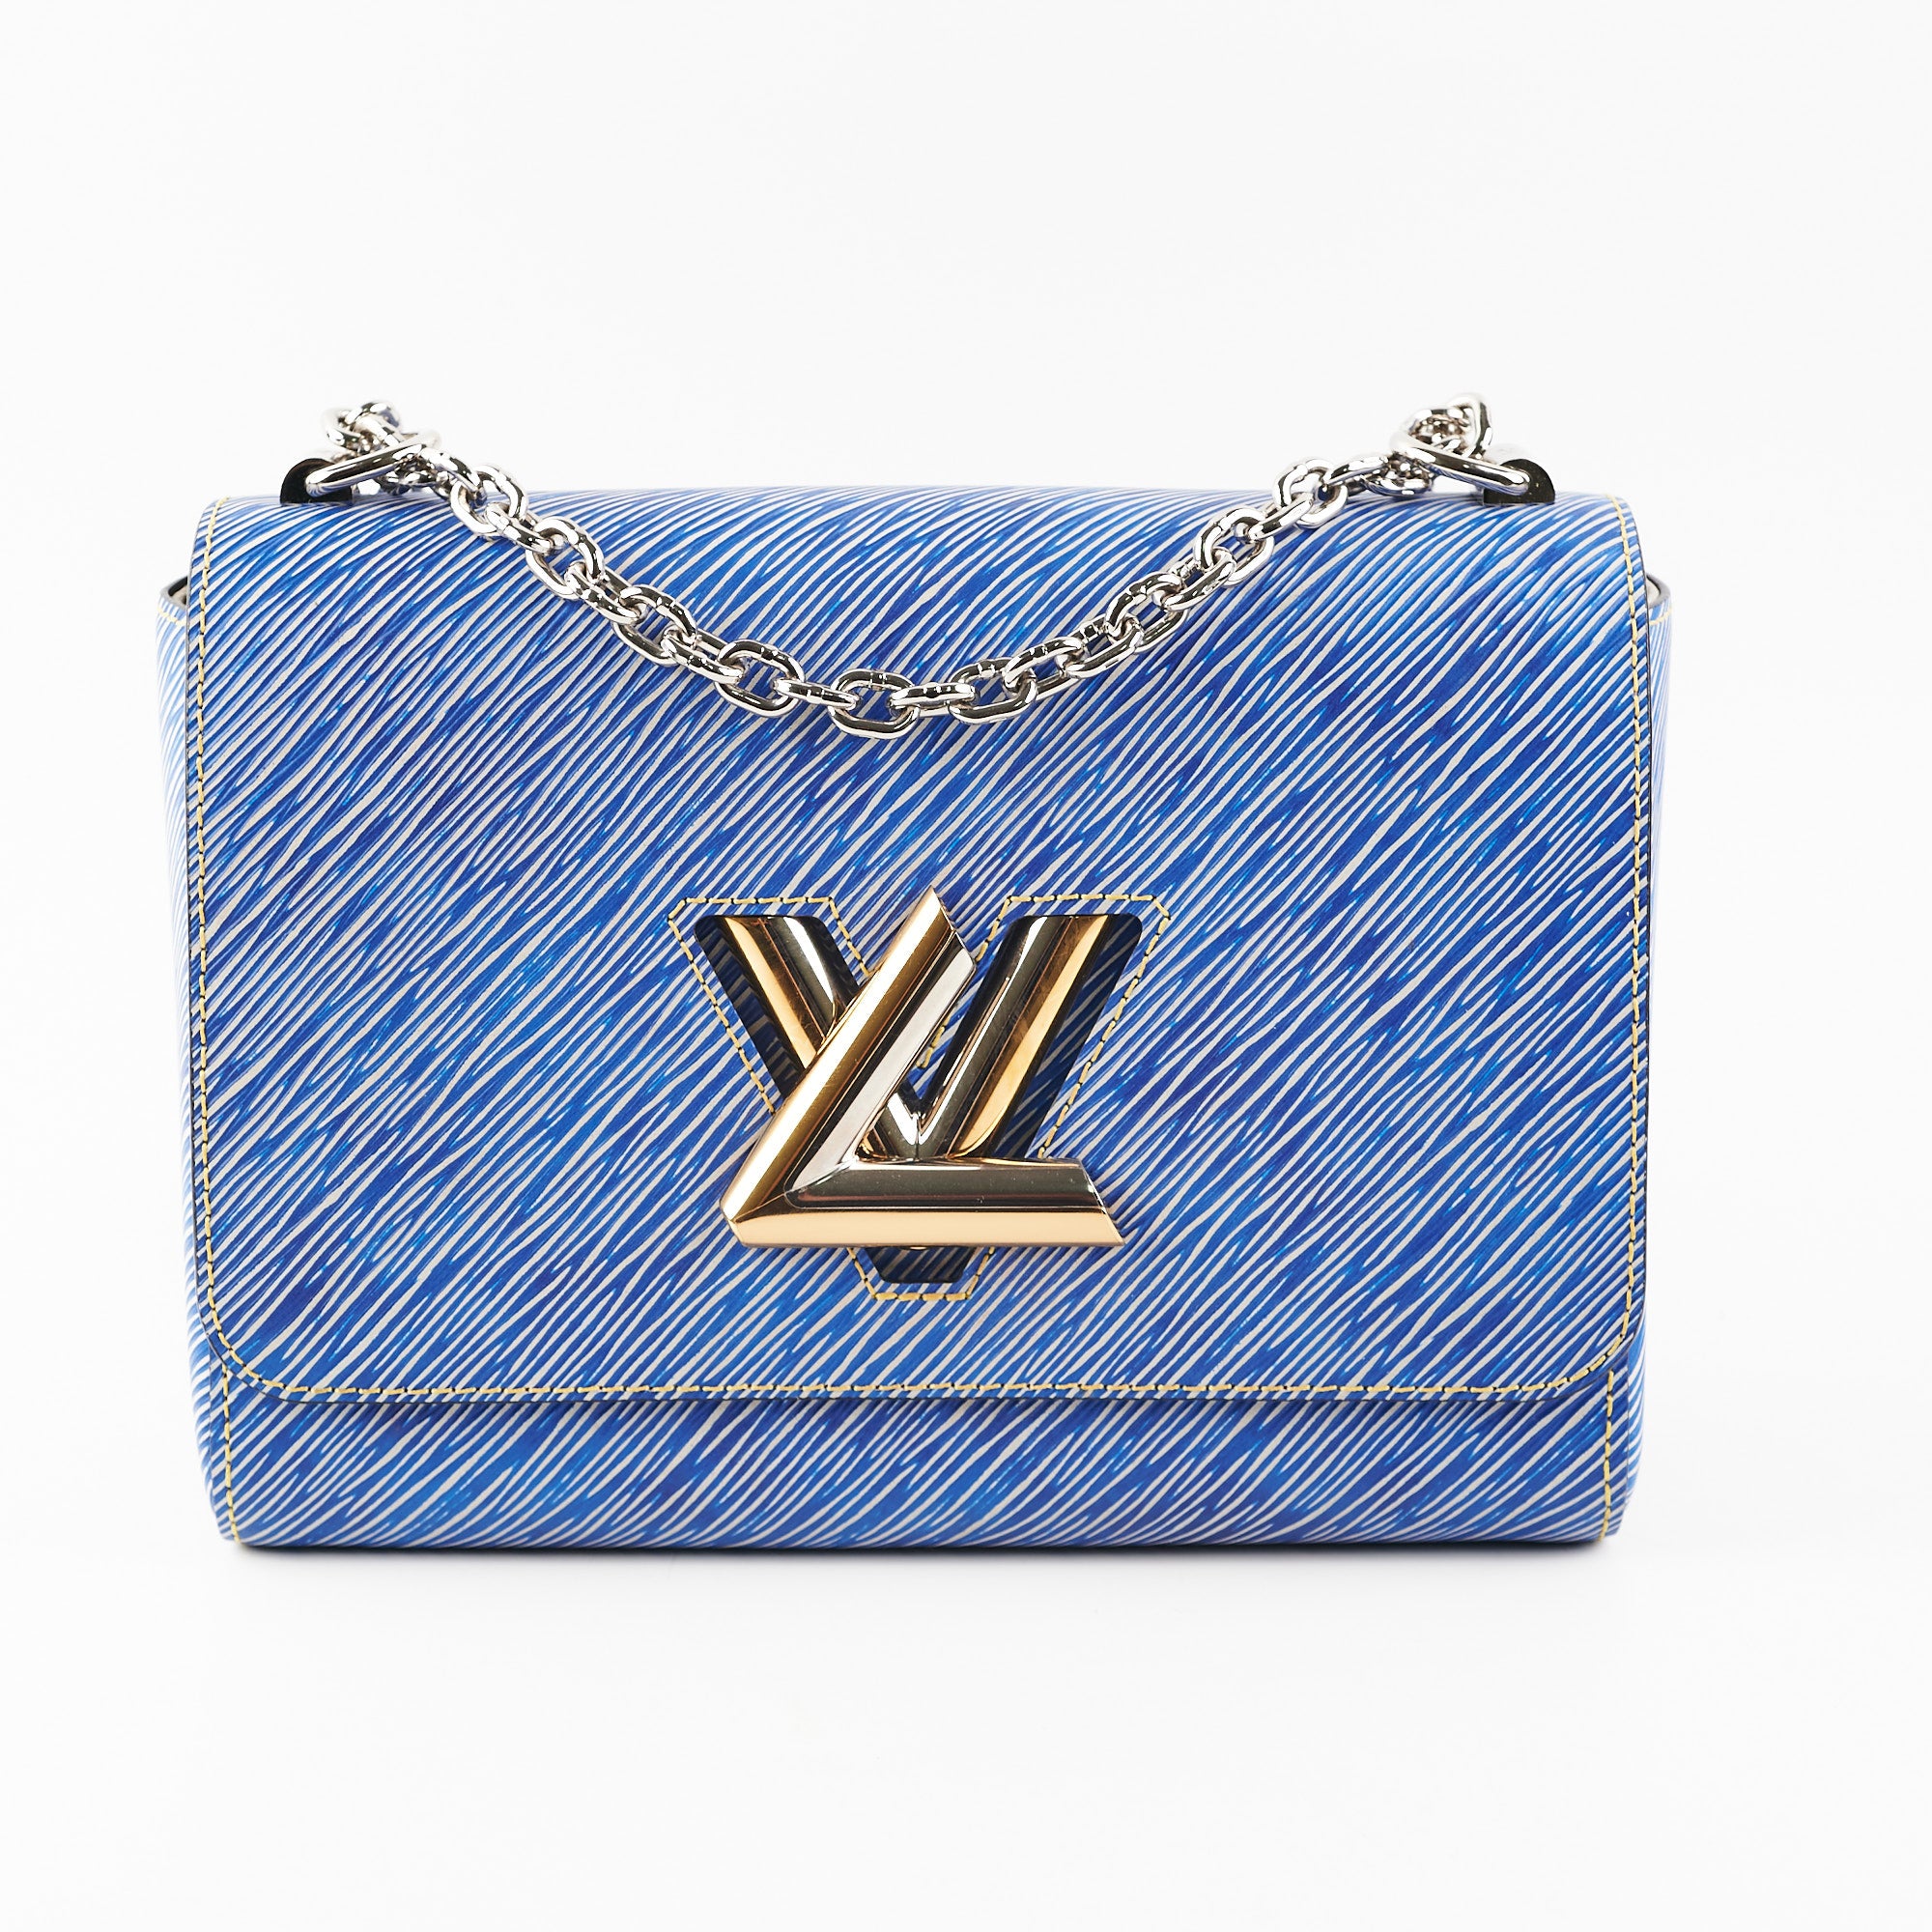 Shop Louis Vuitton Twist mm (M59402, M59403, M59627) by lifeisfun